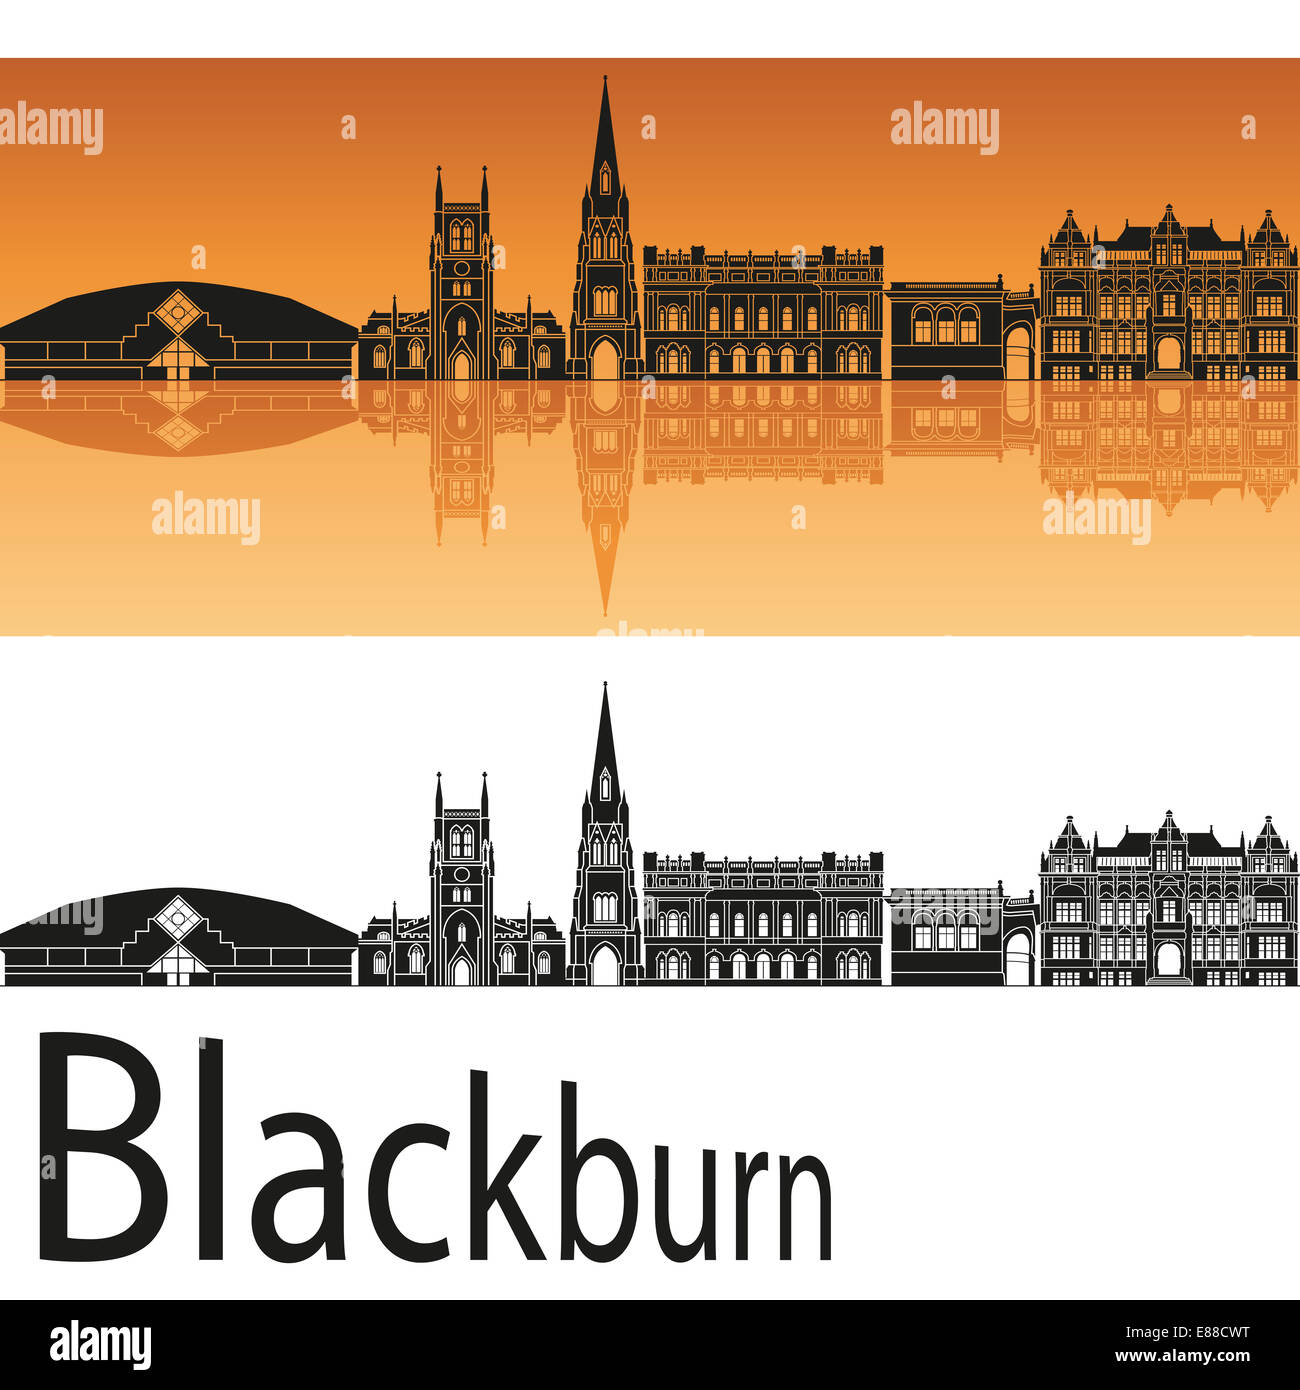 Blackburn skyline in orange Stock Photo